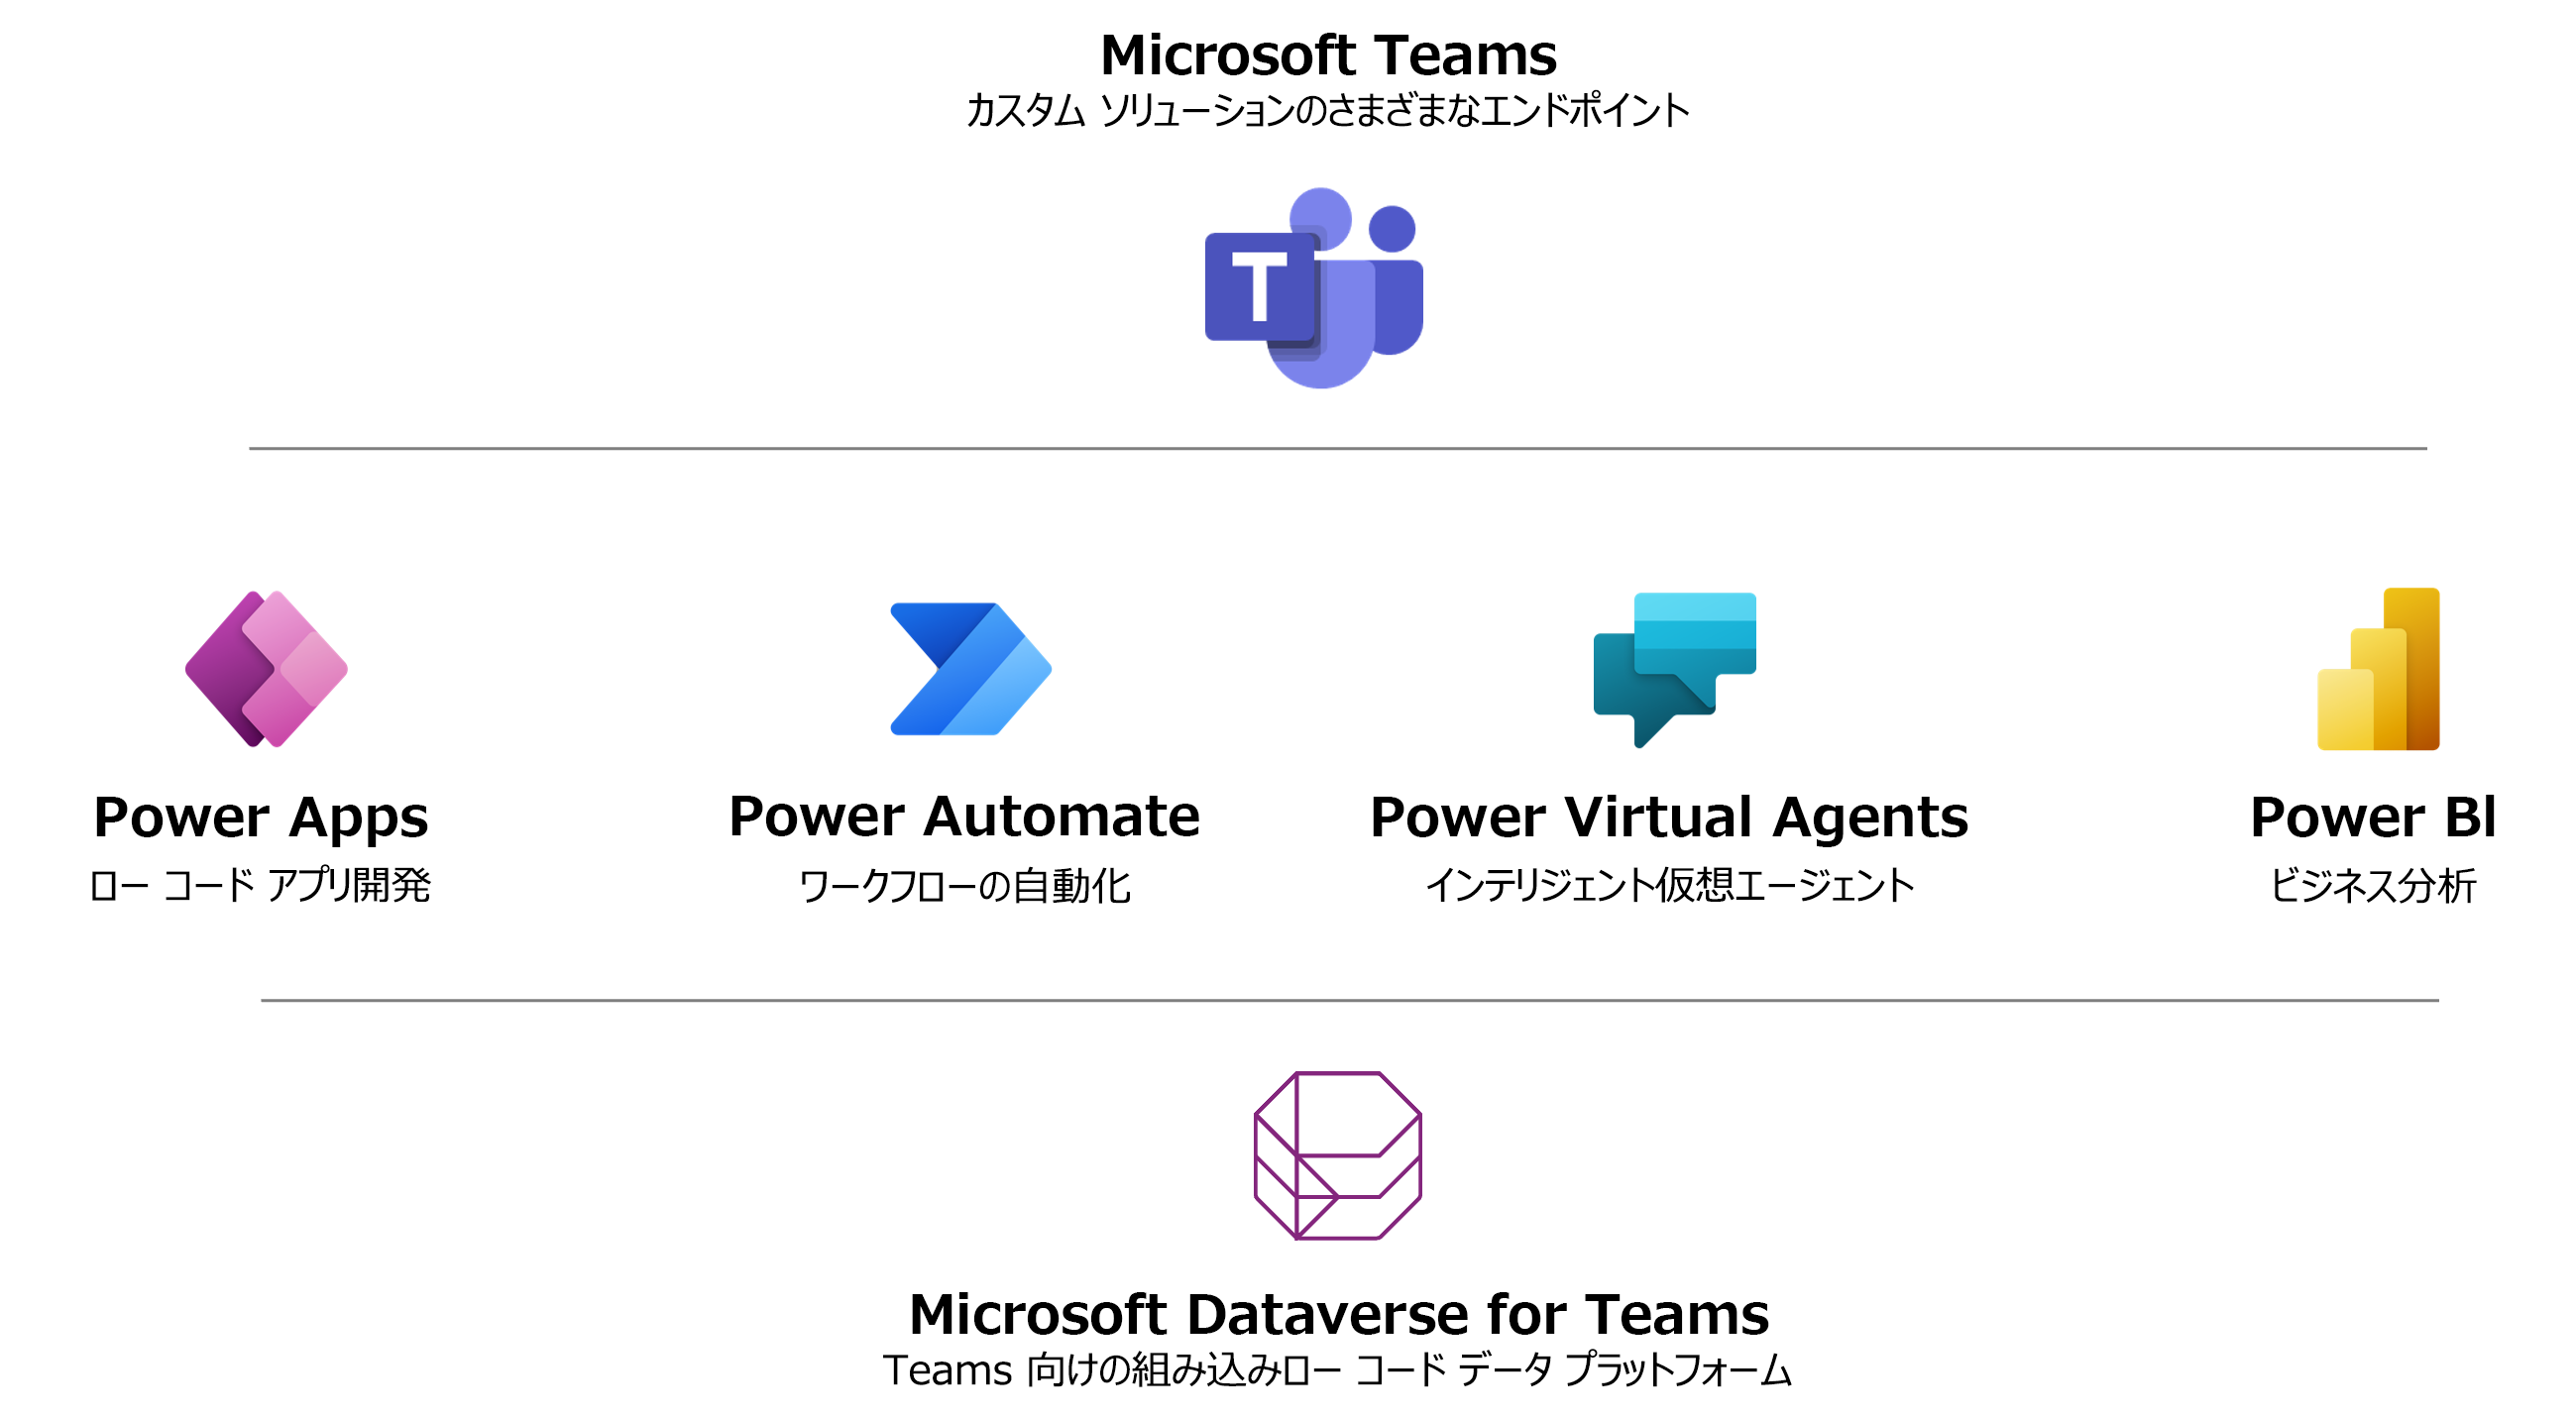 Microsoft Teams がさまざまなツールの機能を組み合わせて、完全に統合されたエクスペリエンスを作成できることを示す図。